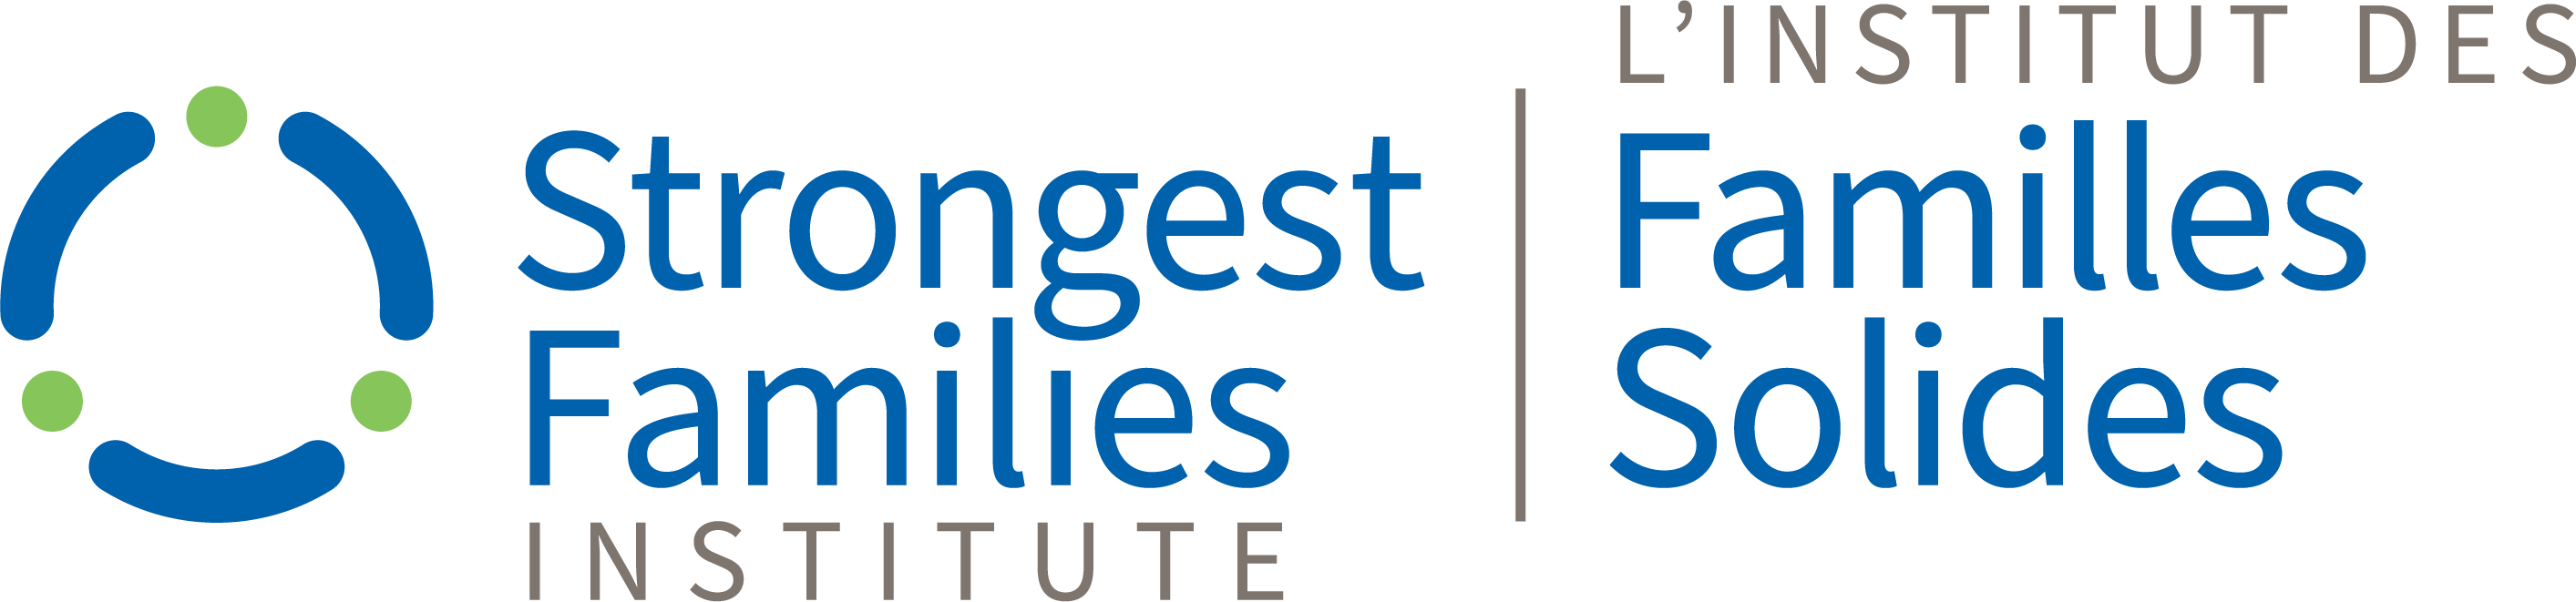 Strongest Families Institute-logo